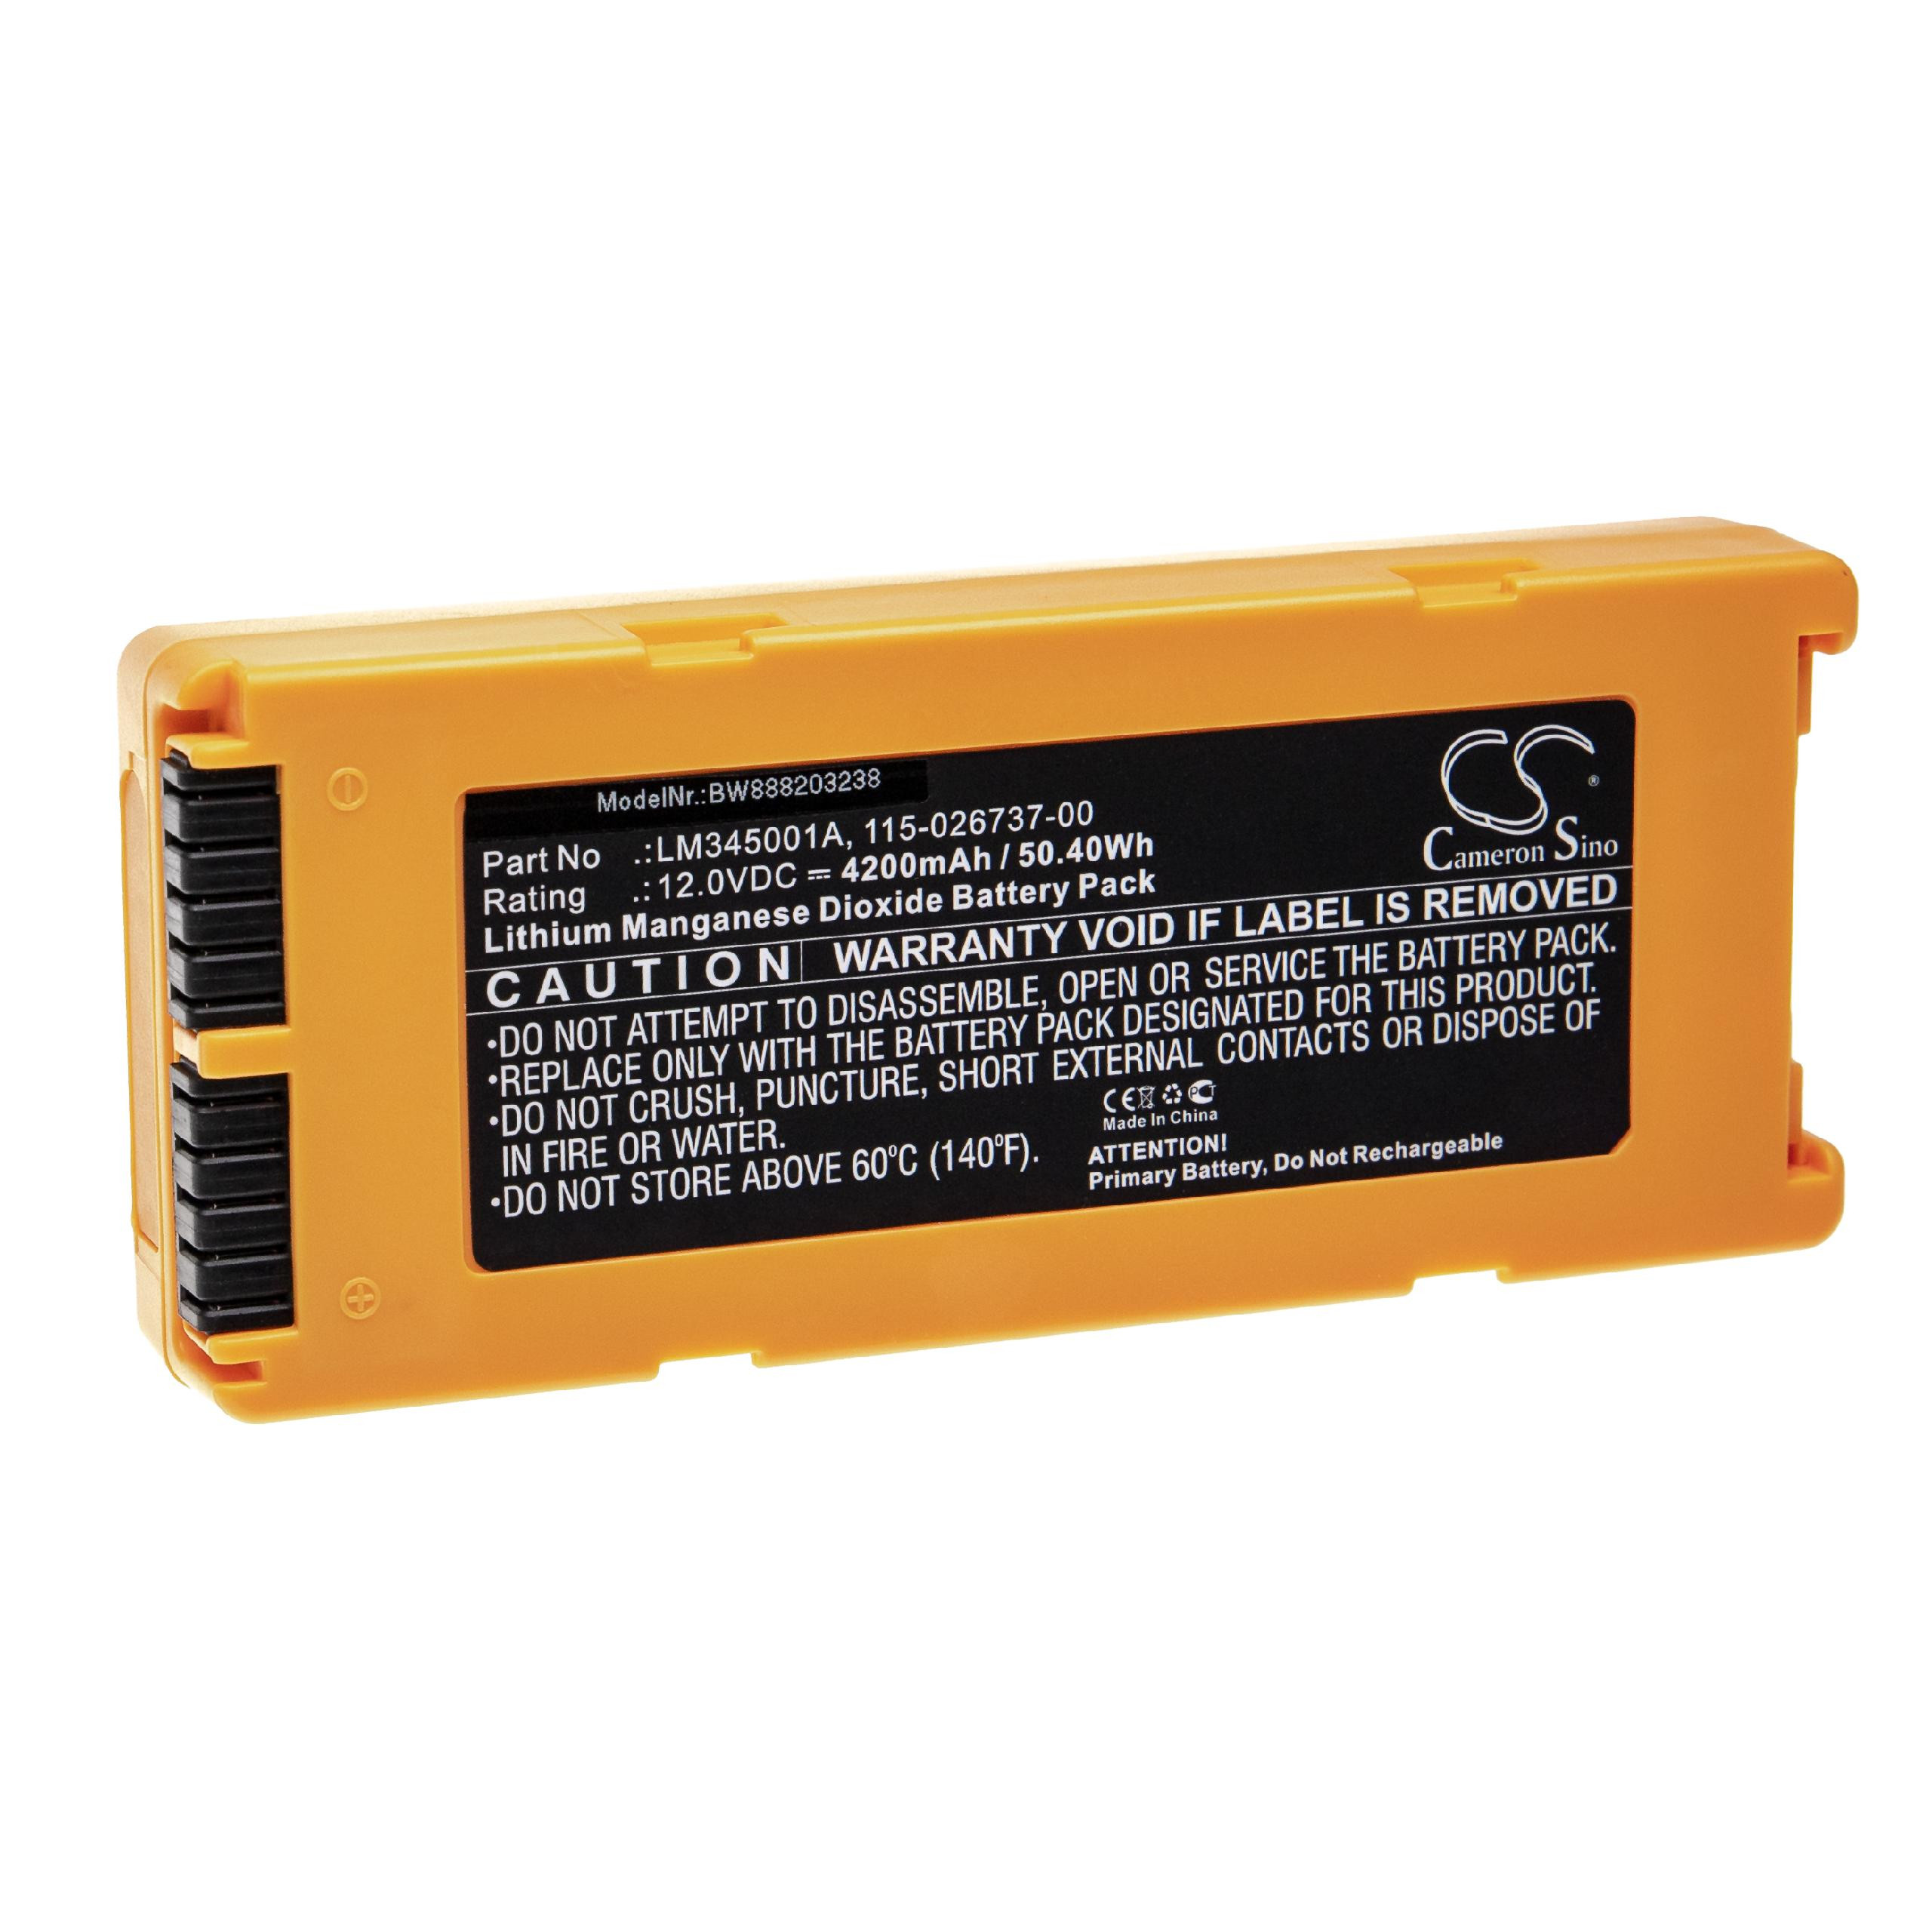 Medizintechnik-Batterie als Ersatz für Mindray 022-000124-00, 115-026737-00 - 4200mAh, 12V, Li-MnO2